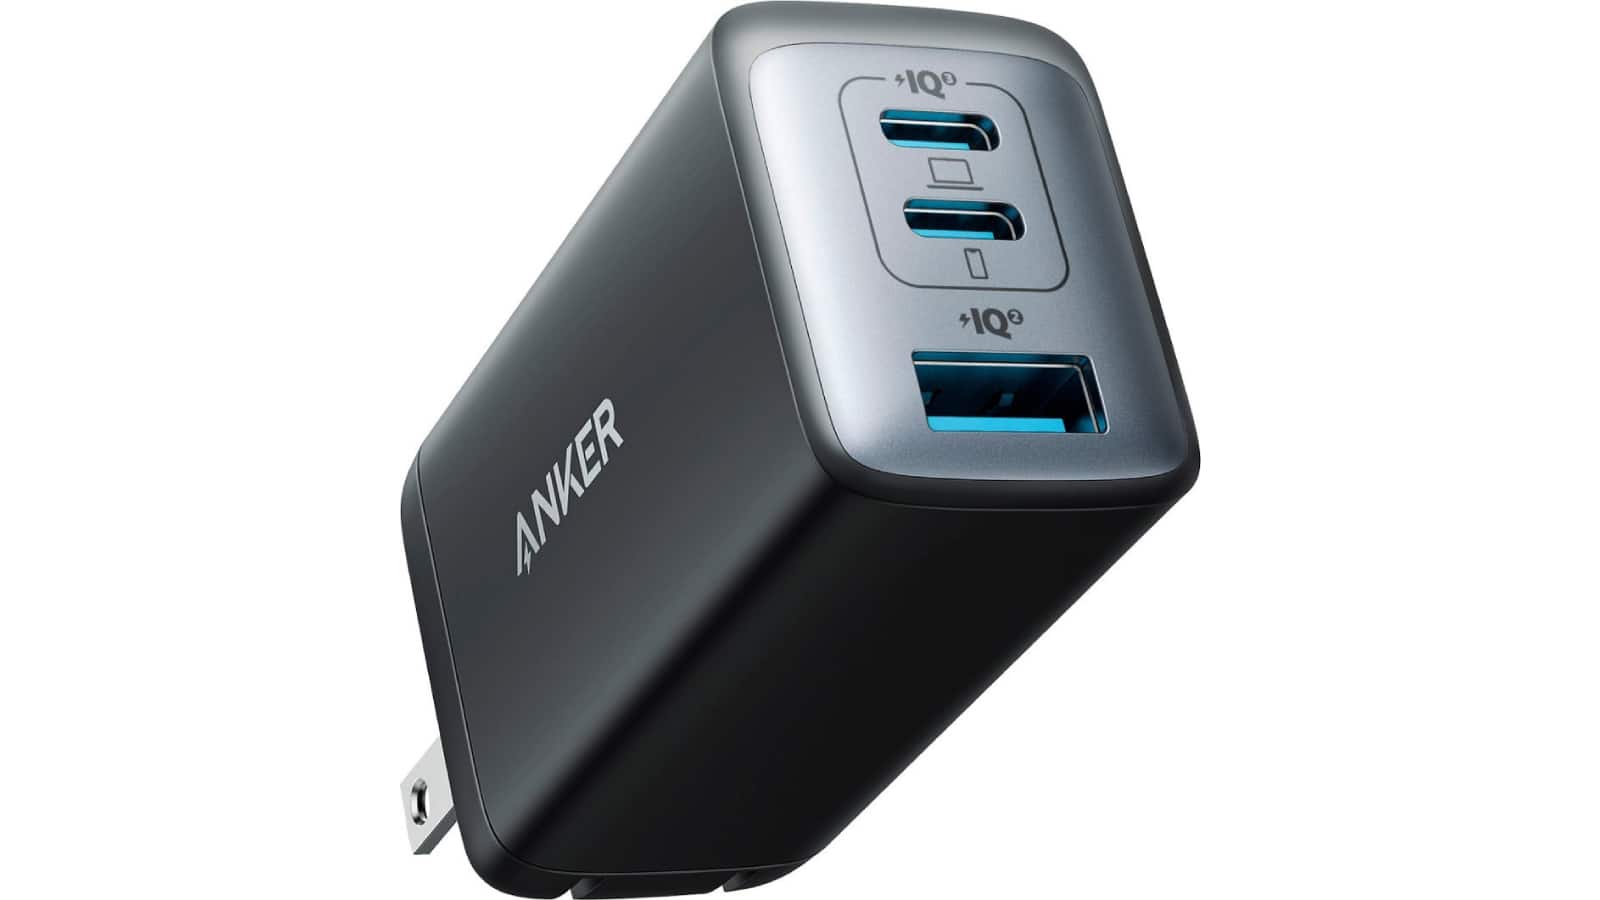 Compre el cargador USB-C Anker 735 por solo $ 39